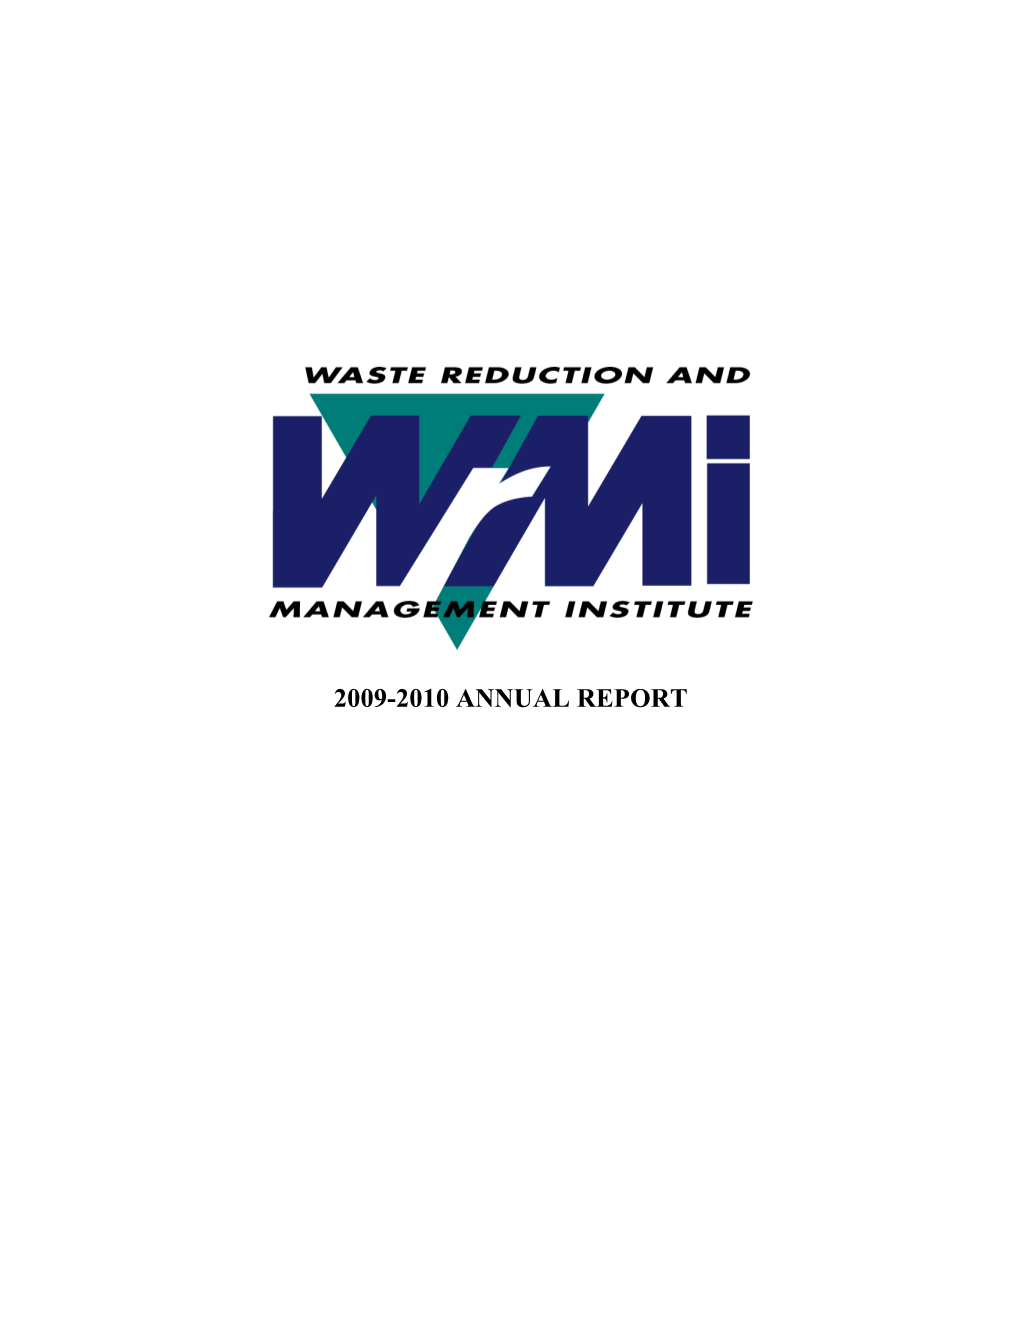 WRMI Annual Report